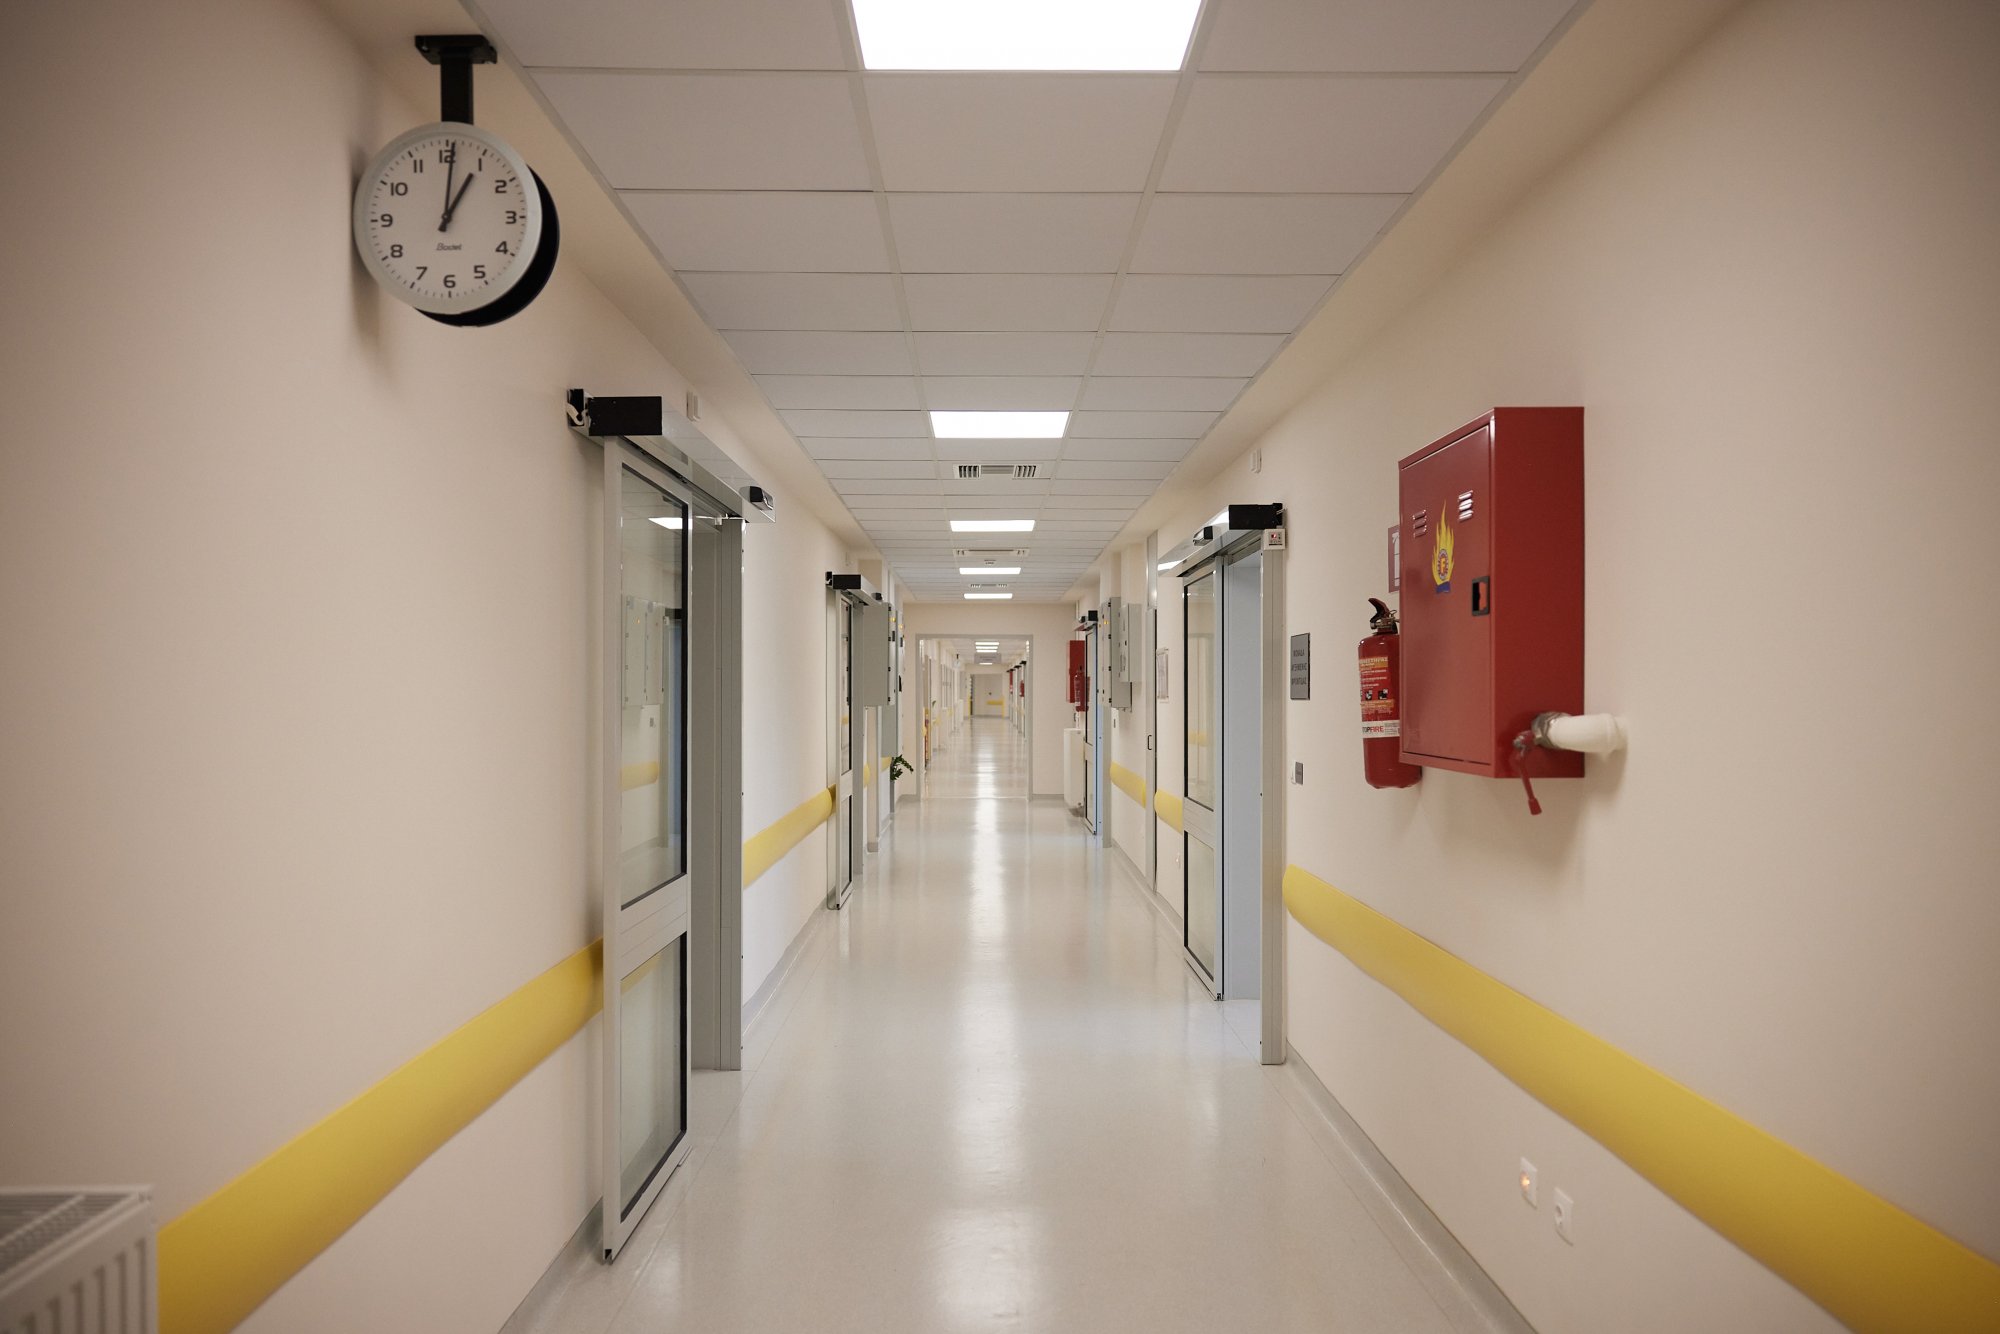 Ζάκυνθος: Άρπαξαν παιδί από το νοσοκομείο – Συνελήφθη η νοσηλεύτρια βάρδιας  | in.gr